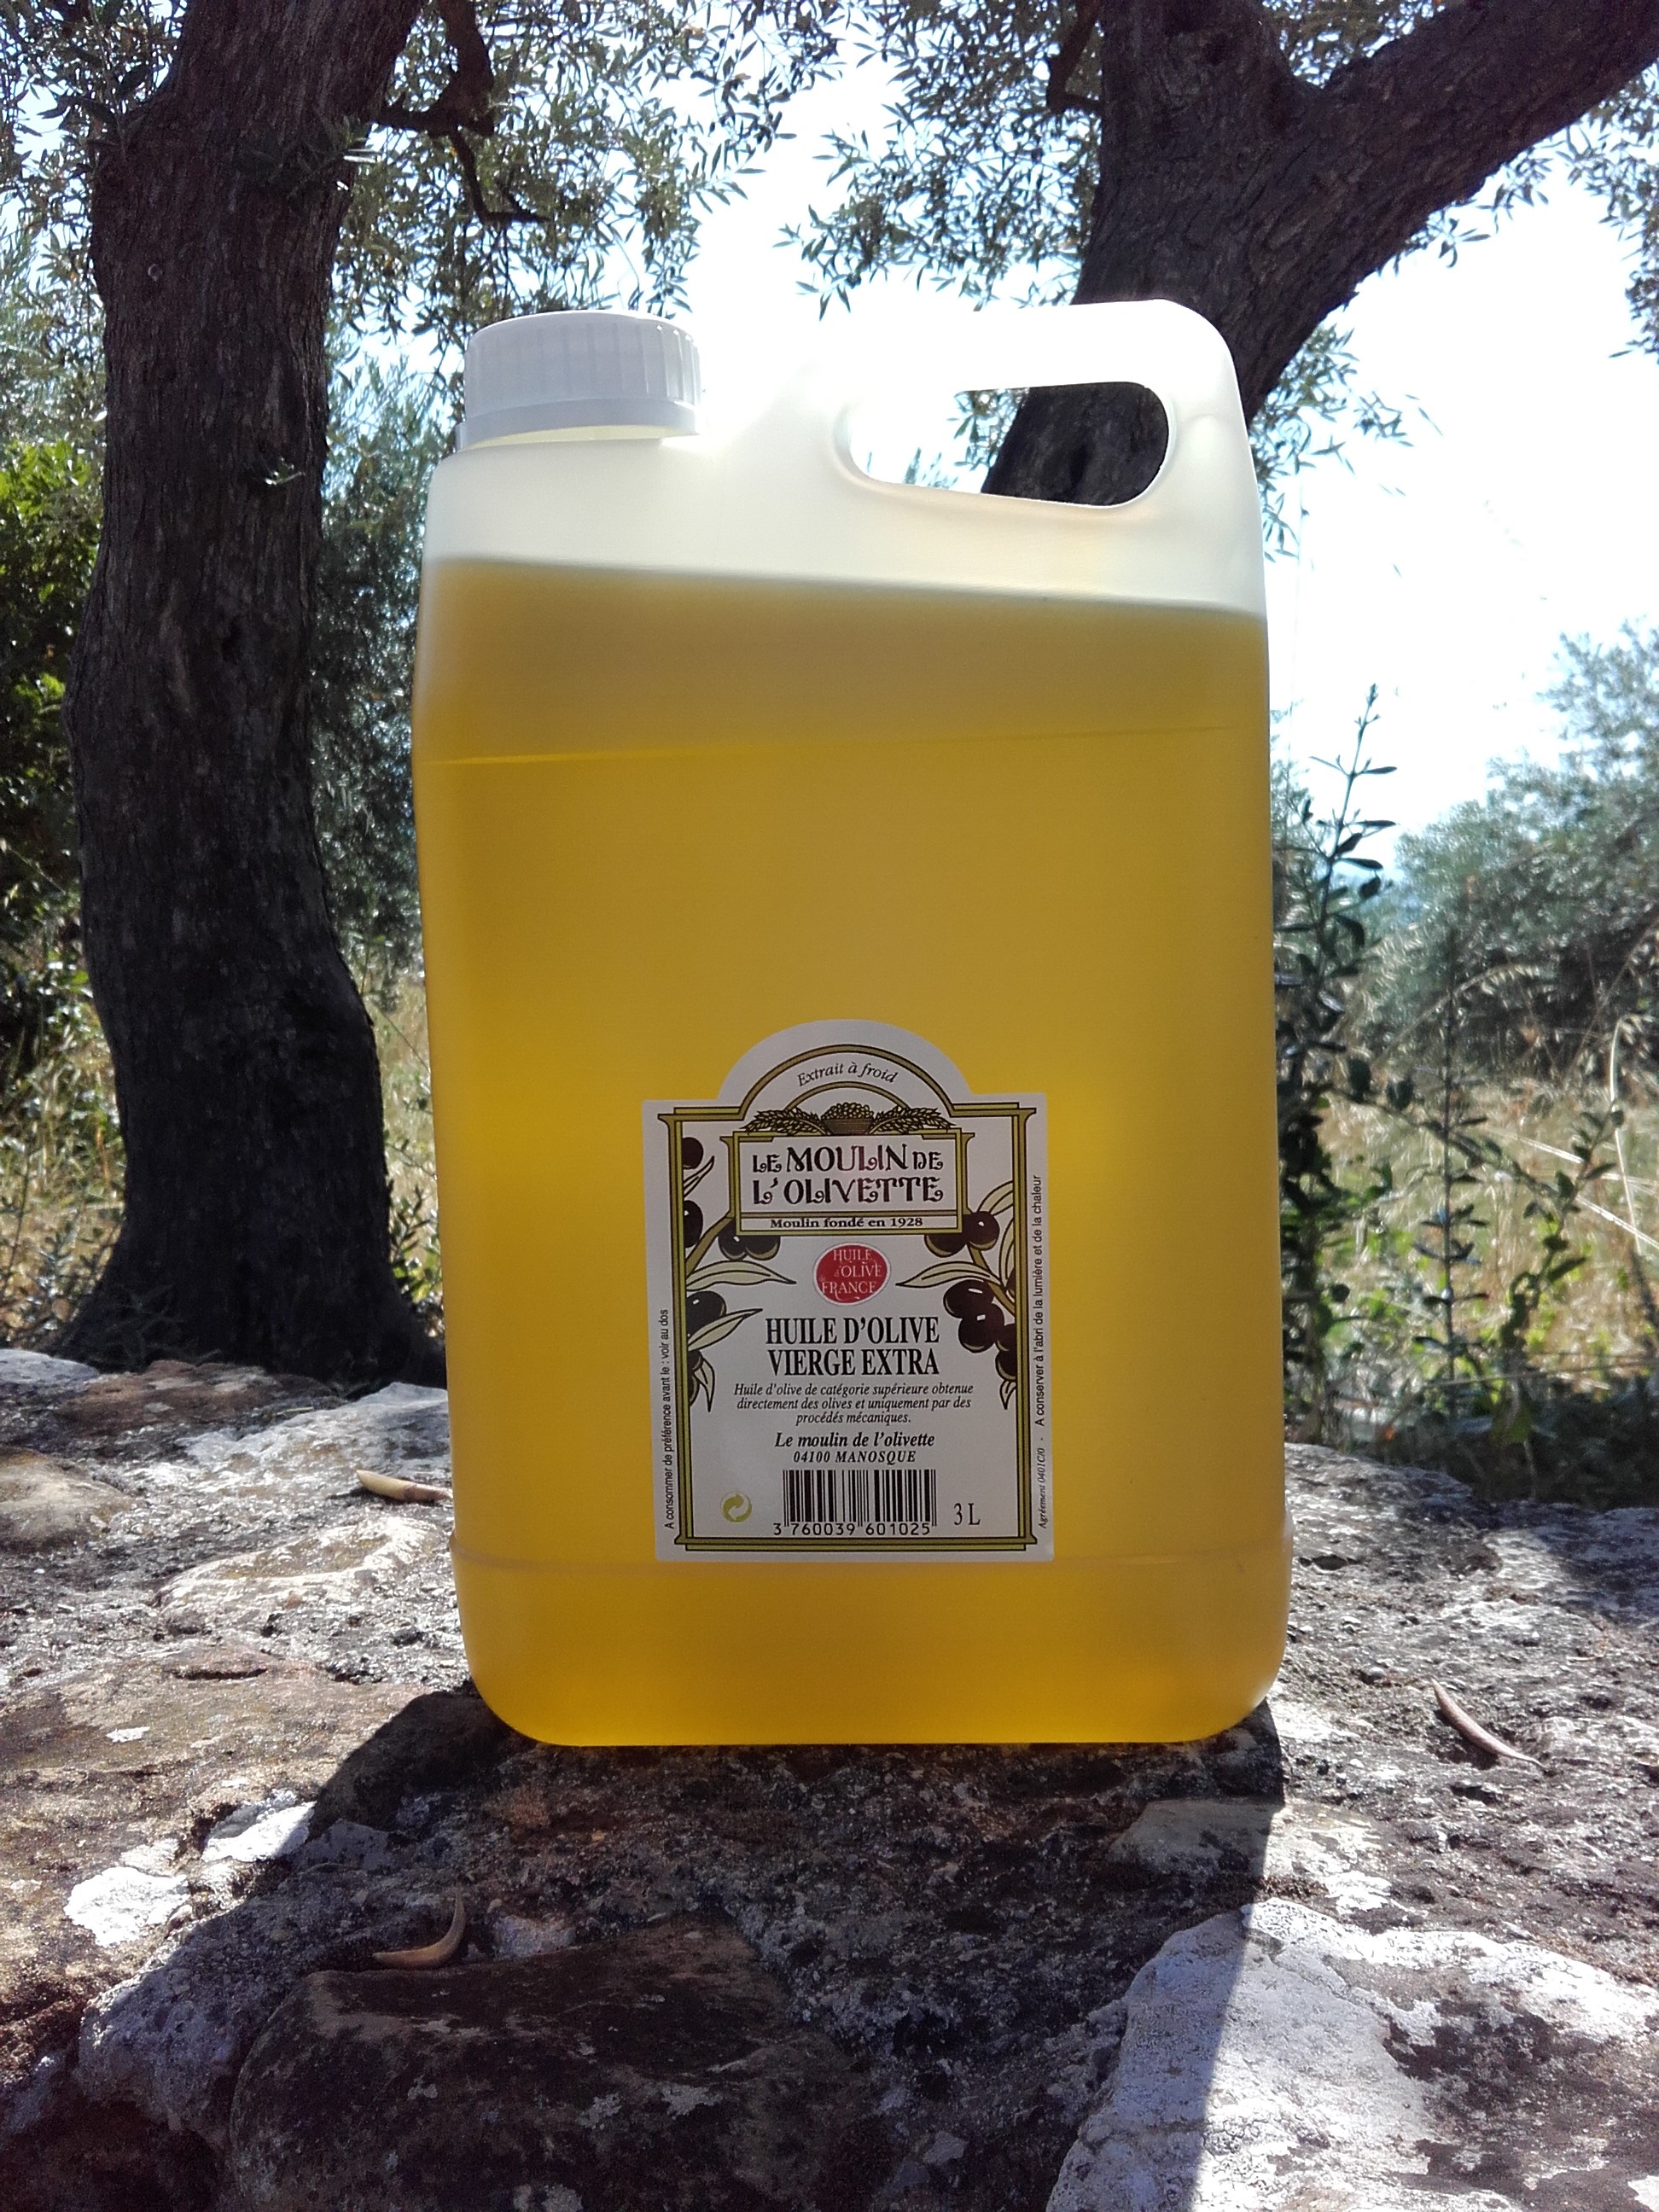 Domaine de l'olivette huile d'olive Roquebrune / Argens Var